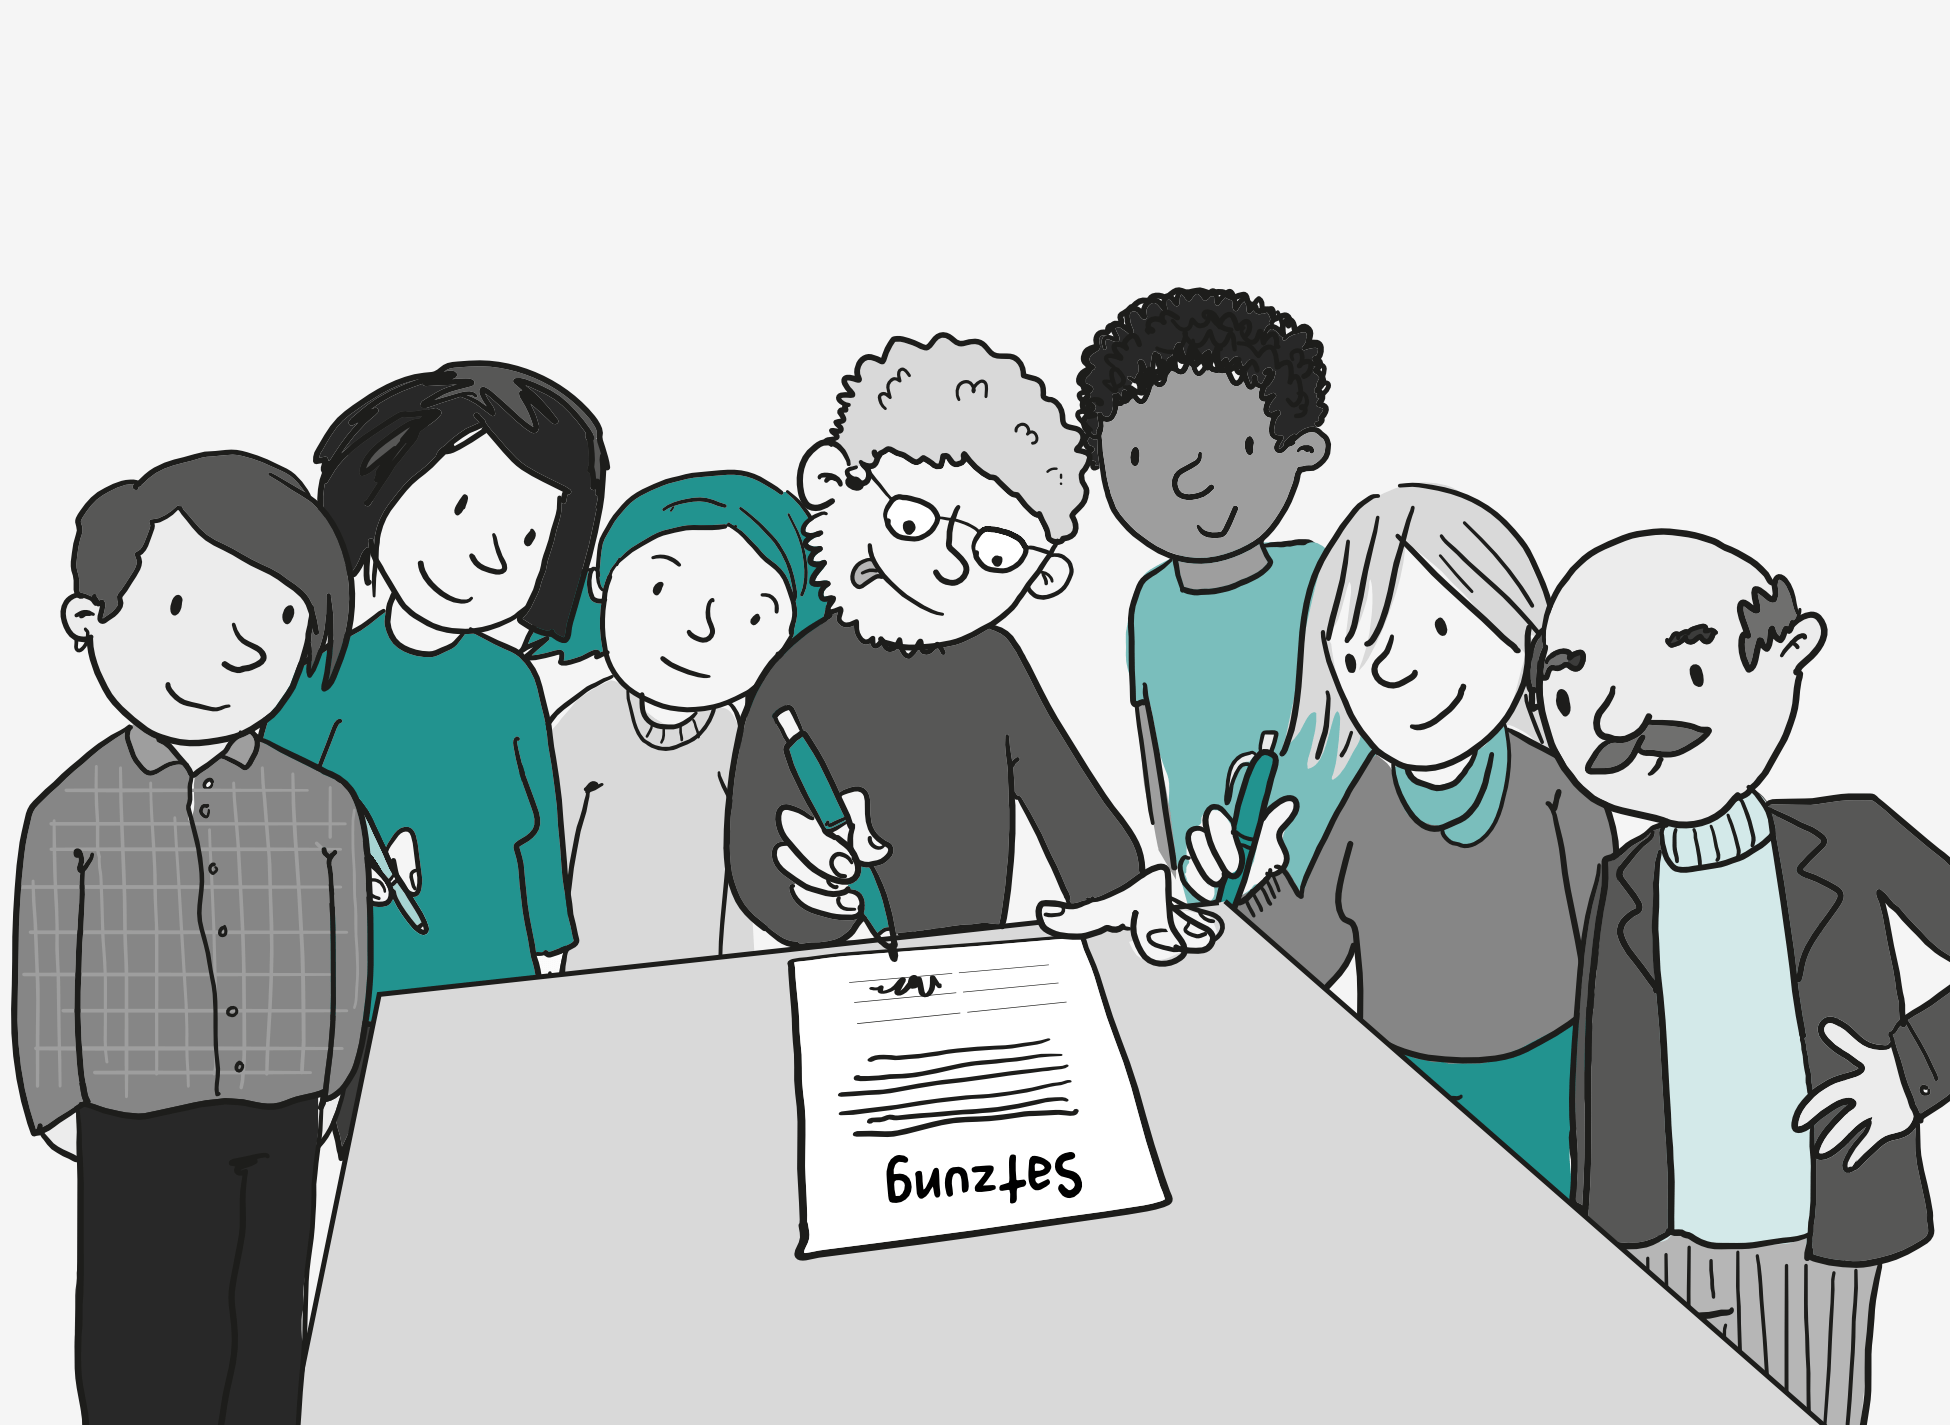 7 Personen drängen sich dicht um einen Tisch. Einige haben Stifte in der Hand. Alle sind bereit dafür, das Dokument auf dem Tisch zu unterschreiben. Auf dem Dokument steht groß: Satzung.